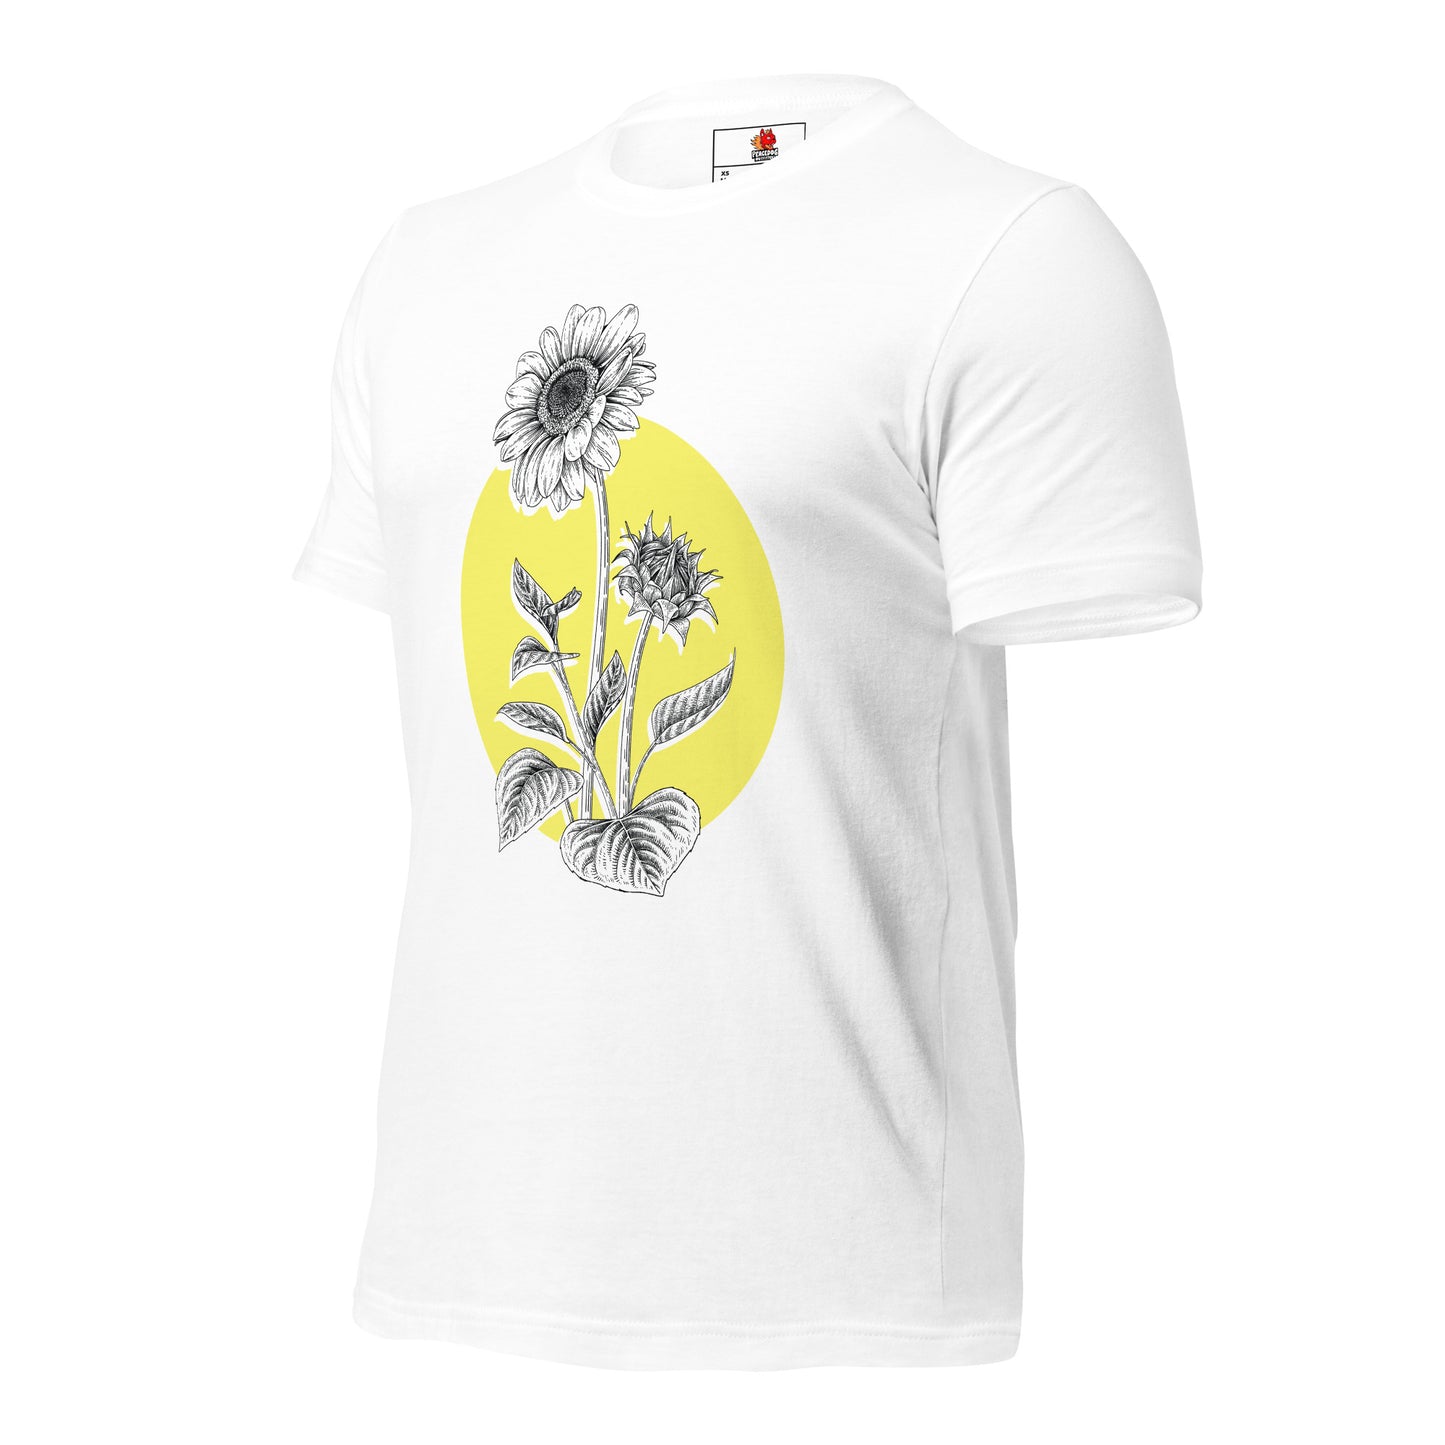 Sunflower T-Shirt